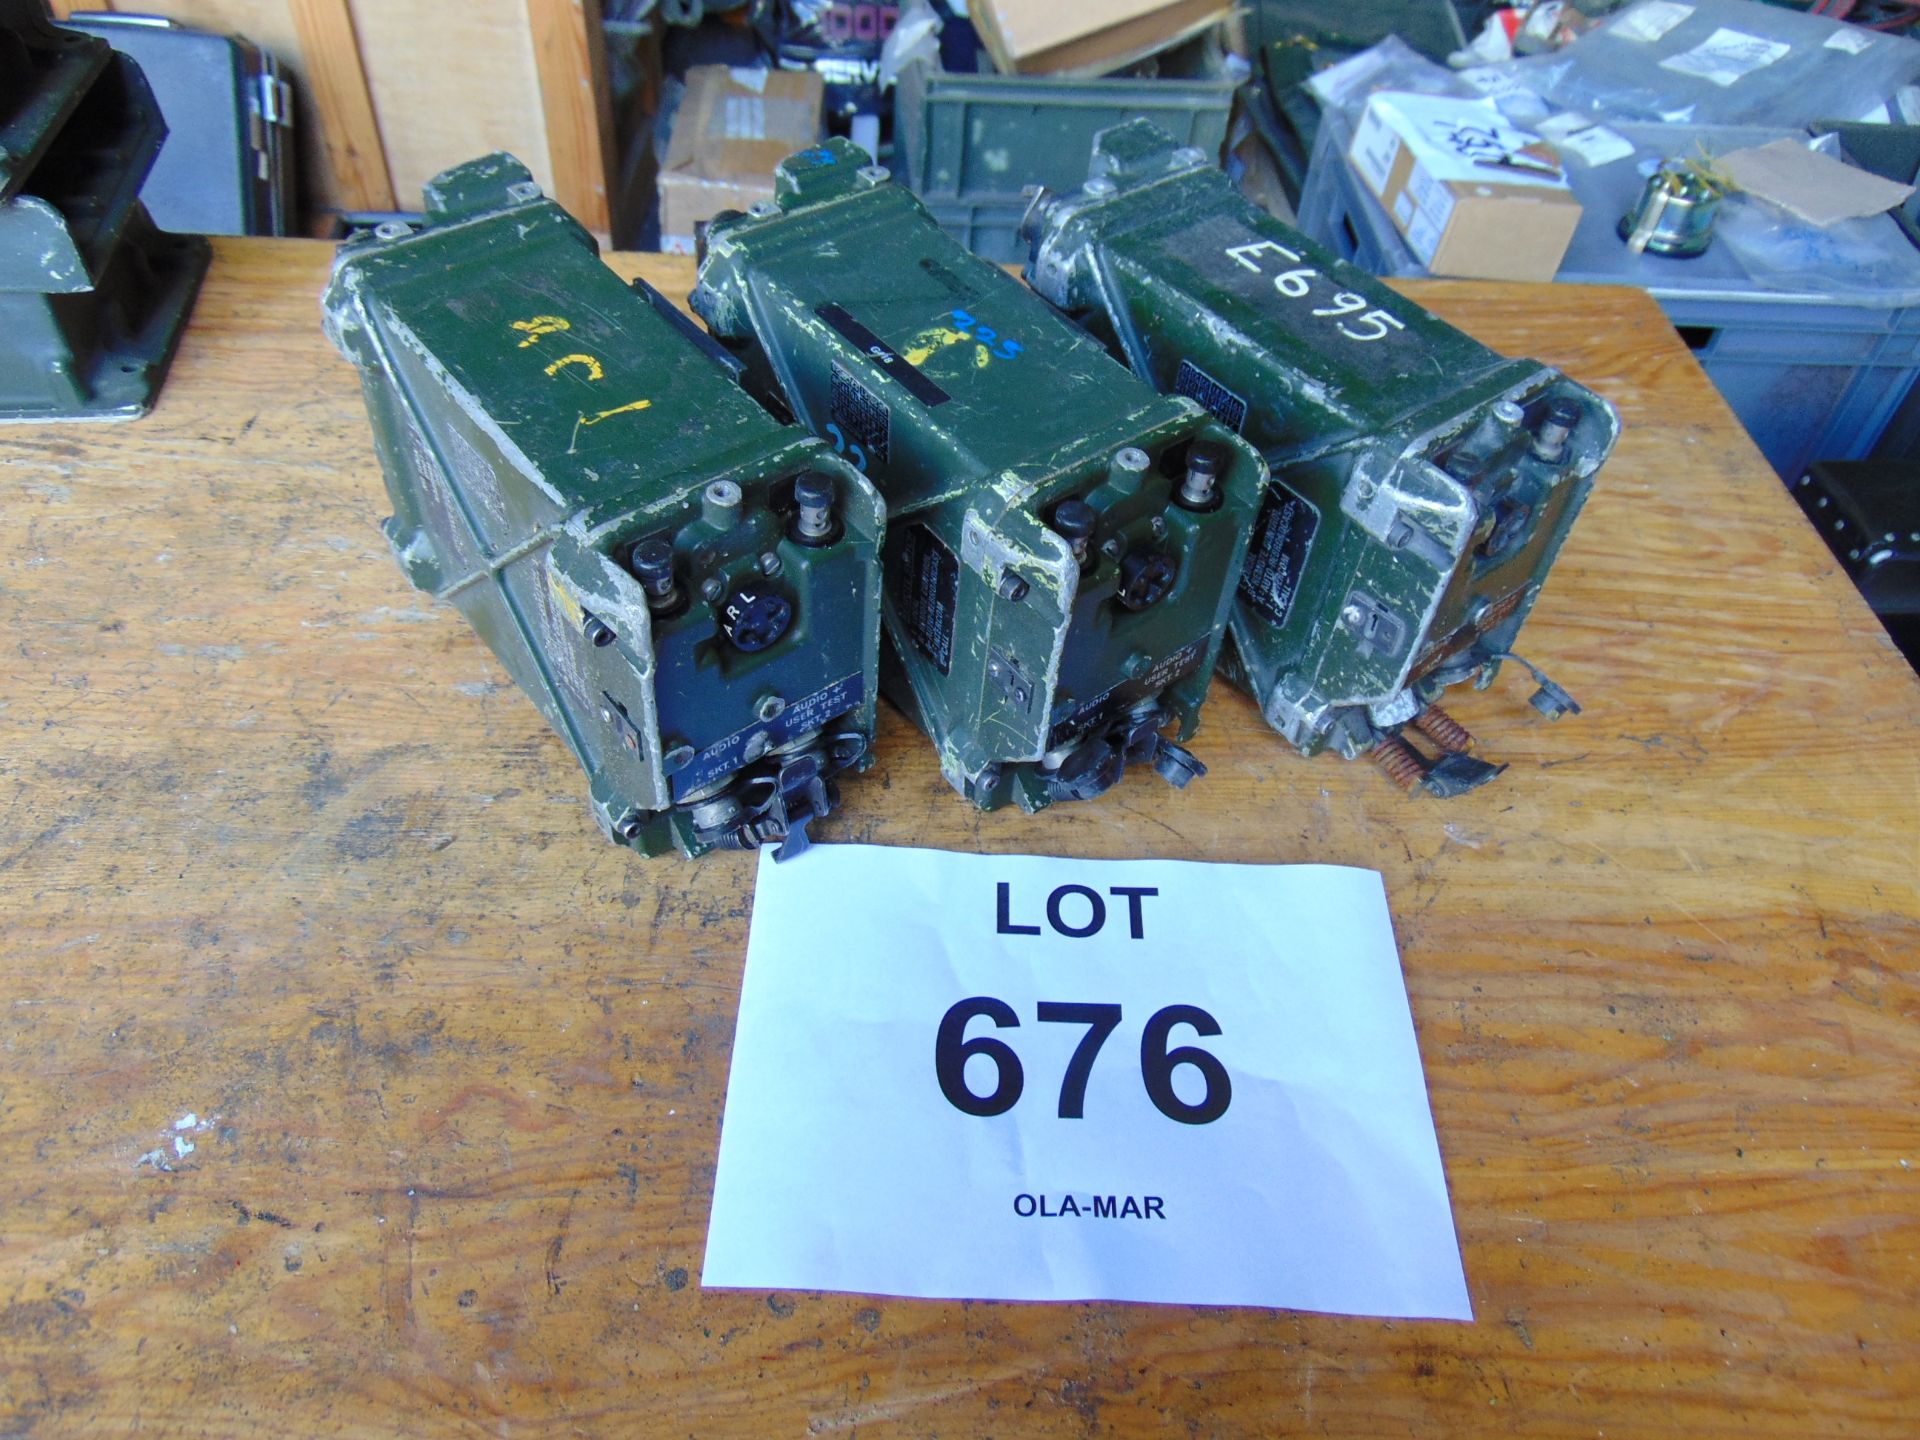 3 x UK/RT 351 Transmitter Receivers